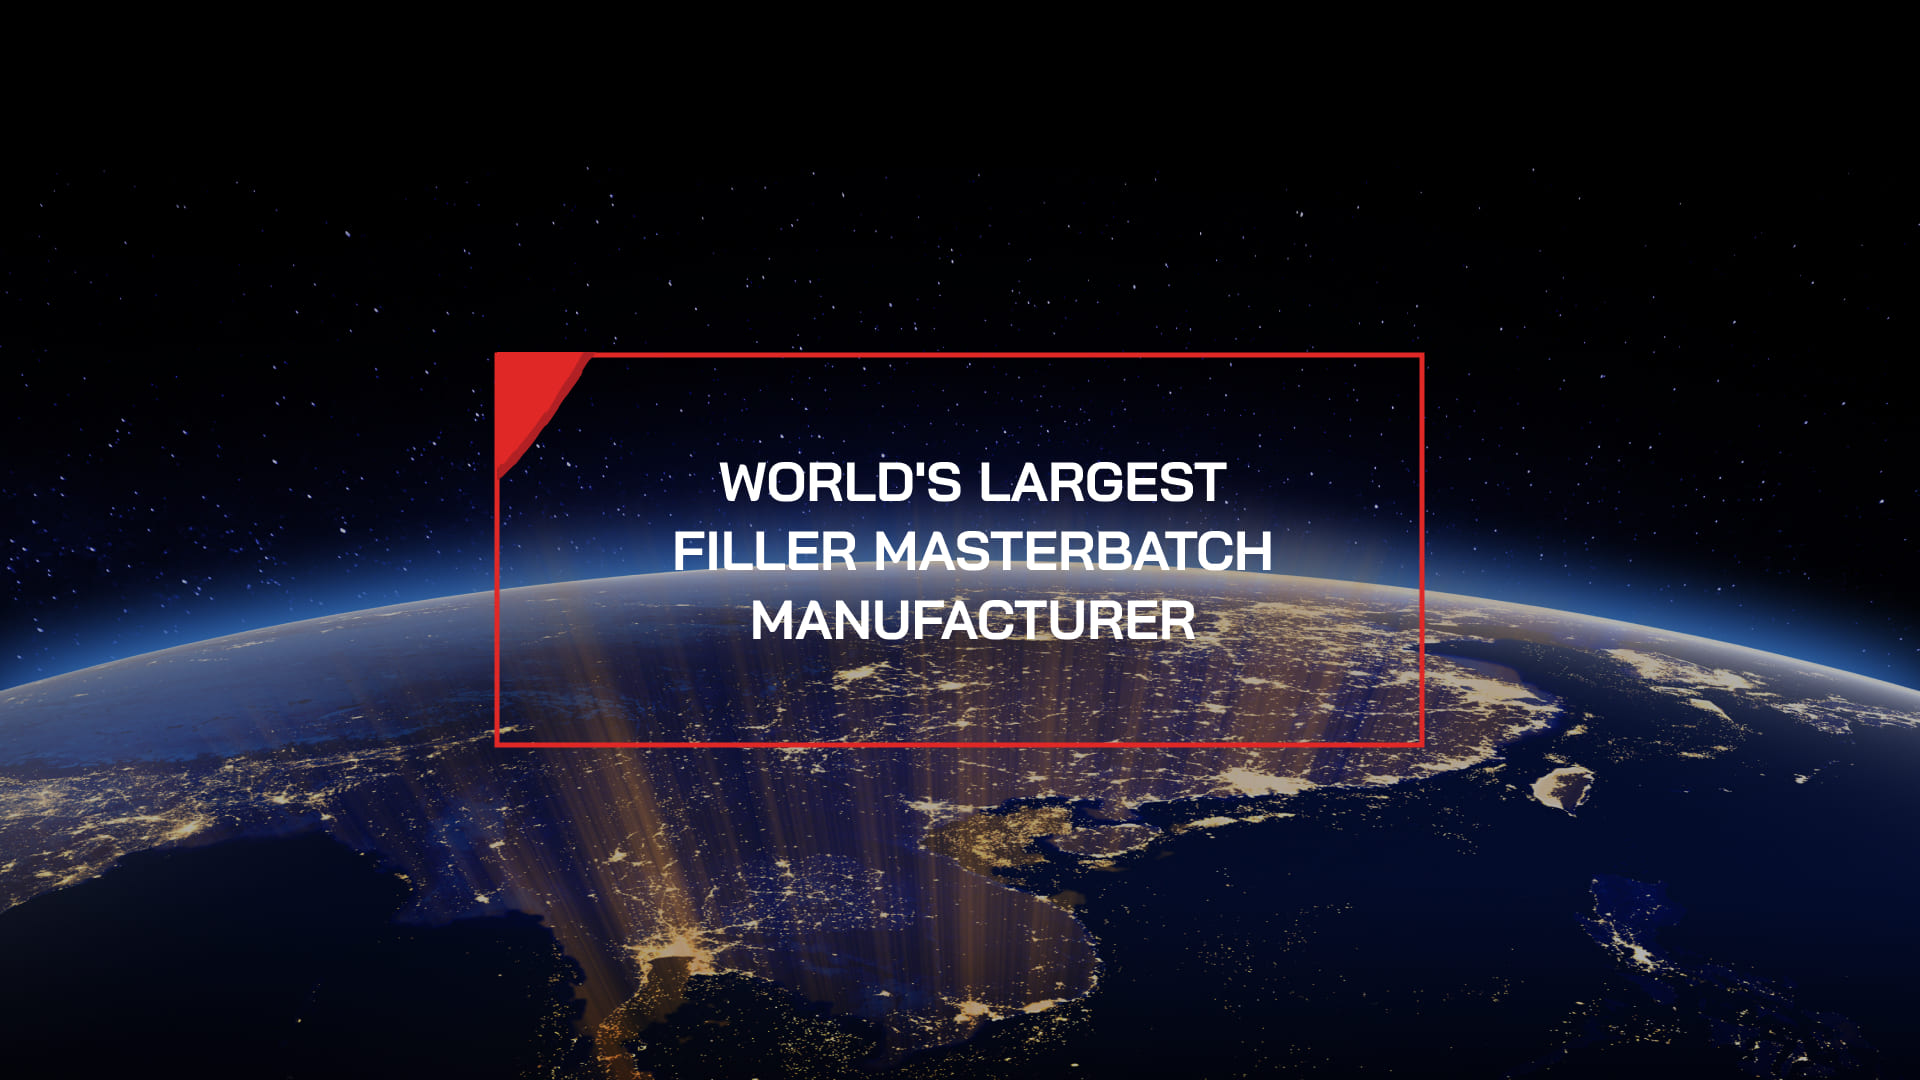 EuroPlas - Nhà sản xuất filler masterbatch số 1 thế giới